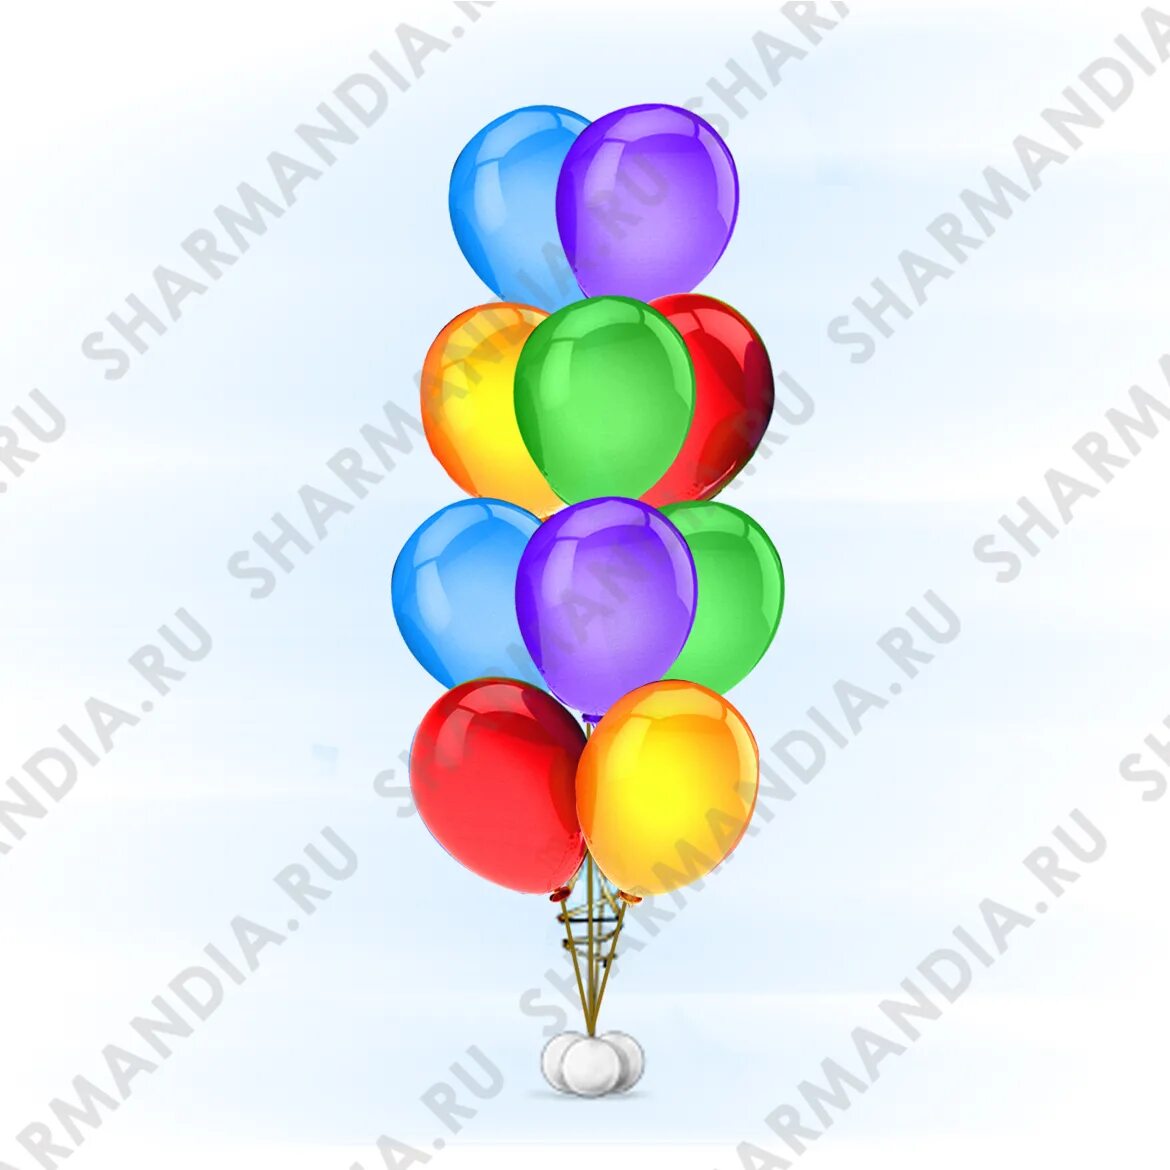 Гелий на 10 шаров. Фонтаны из шаров. Воздушные шары. Воздушный шарик. Фонтан из 10 шаров.